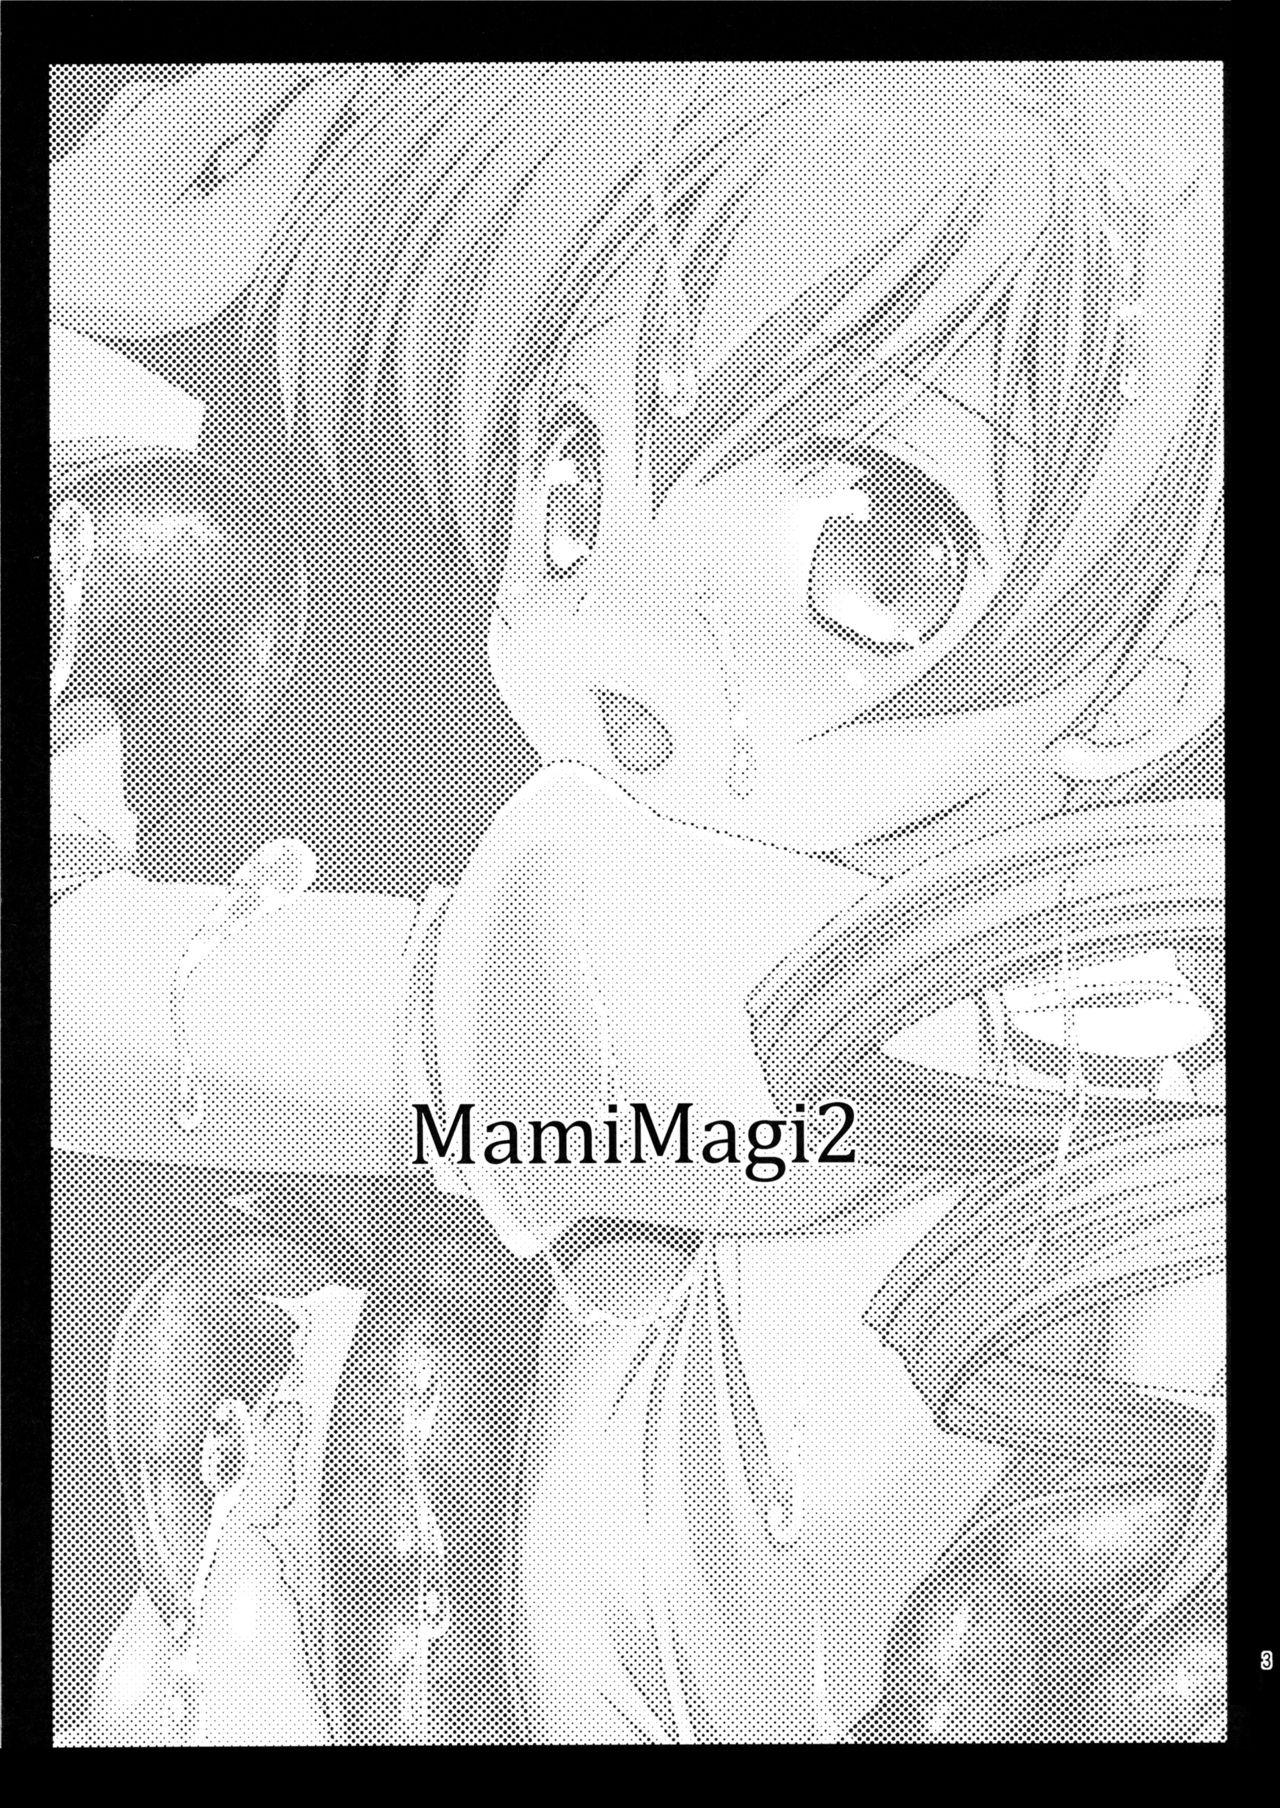 Cojiendo MamiMagi2 - Puella magi madoka magica Fetish - Picture 3